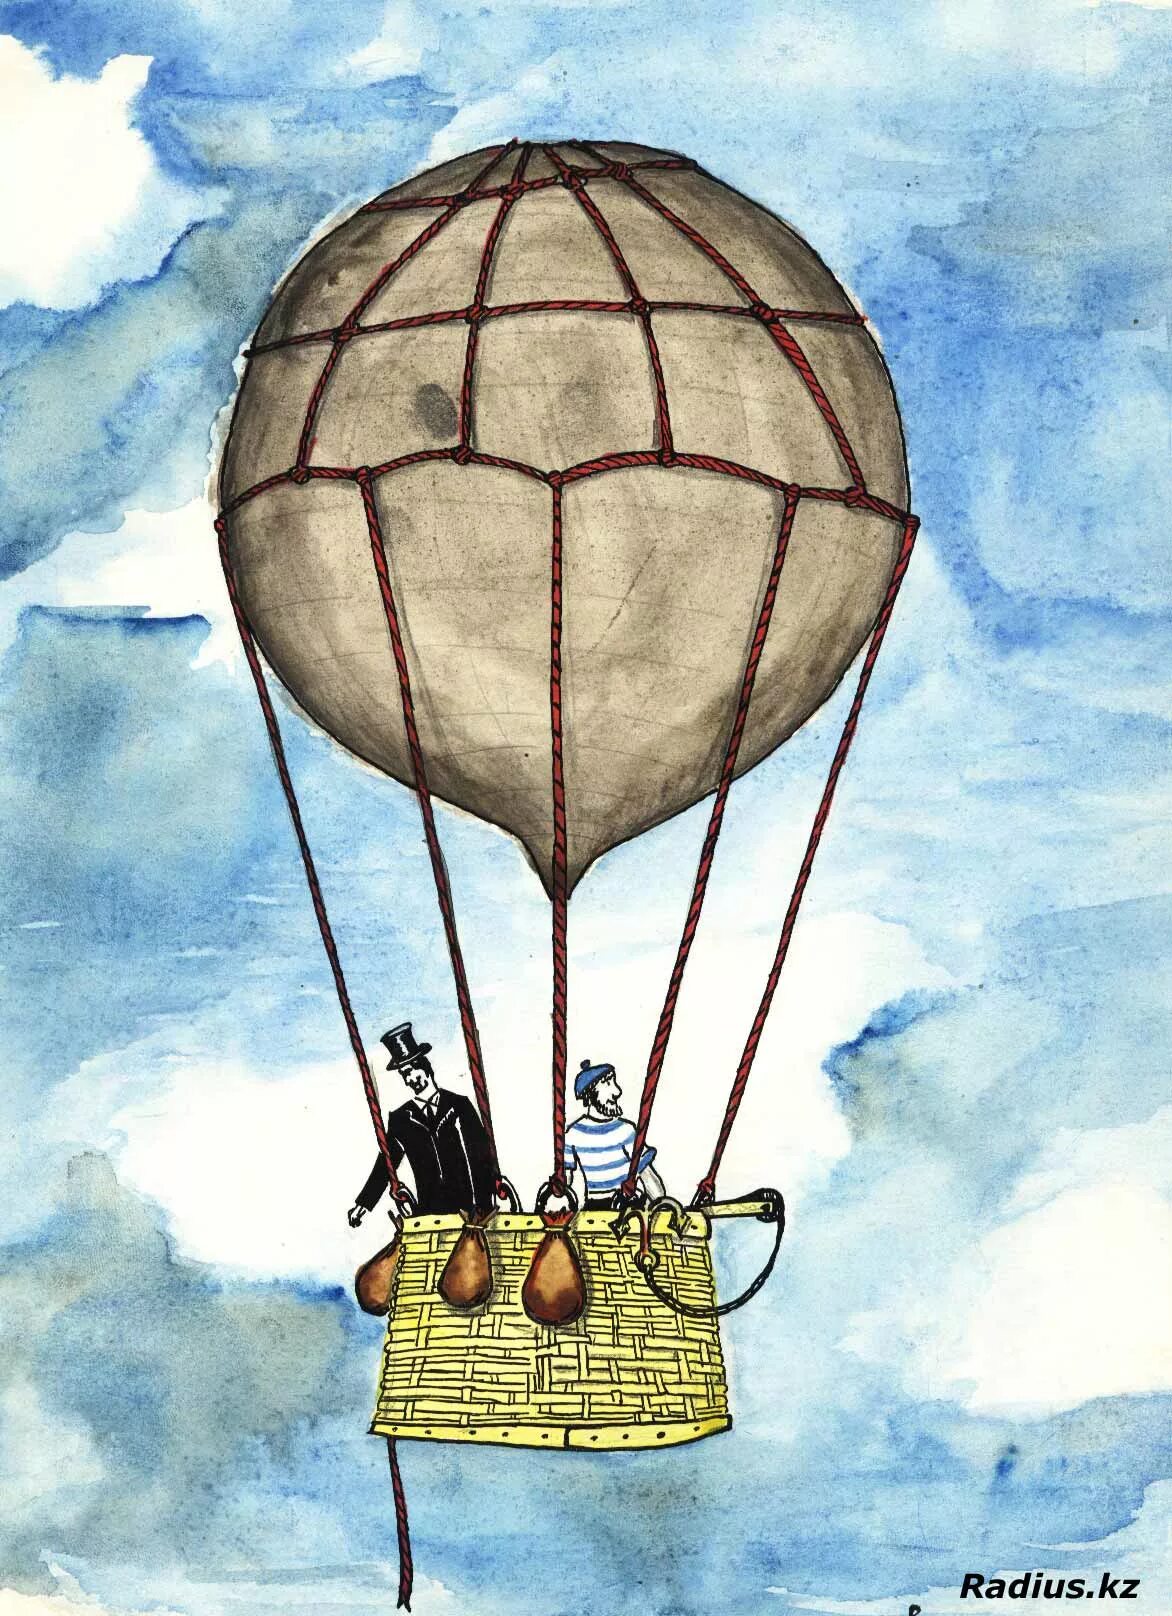 Герой на воздушном шаре. Жюль Верн вокруг света за 80 дней. Воздушный шар Жюль Верн. Путешествие на воздушном шаре Жюль Верн. Вокруг света на воздушном шаре Жюль Верн.